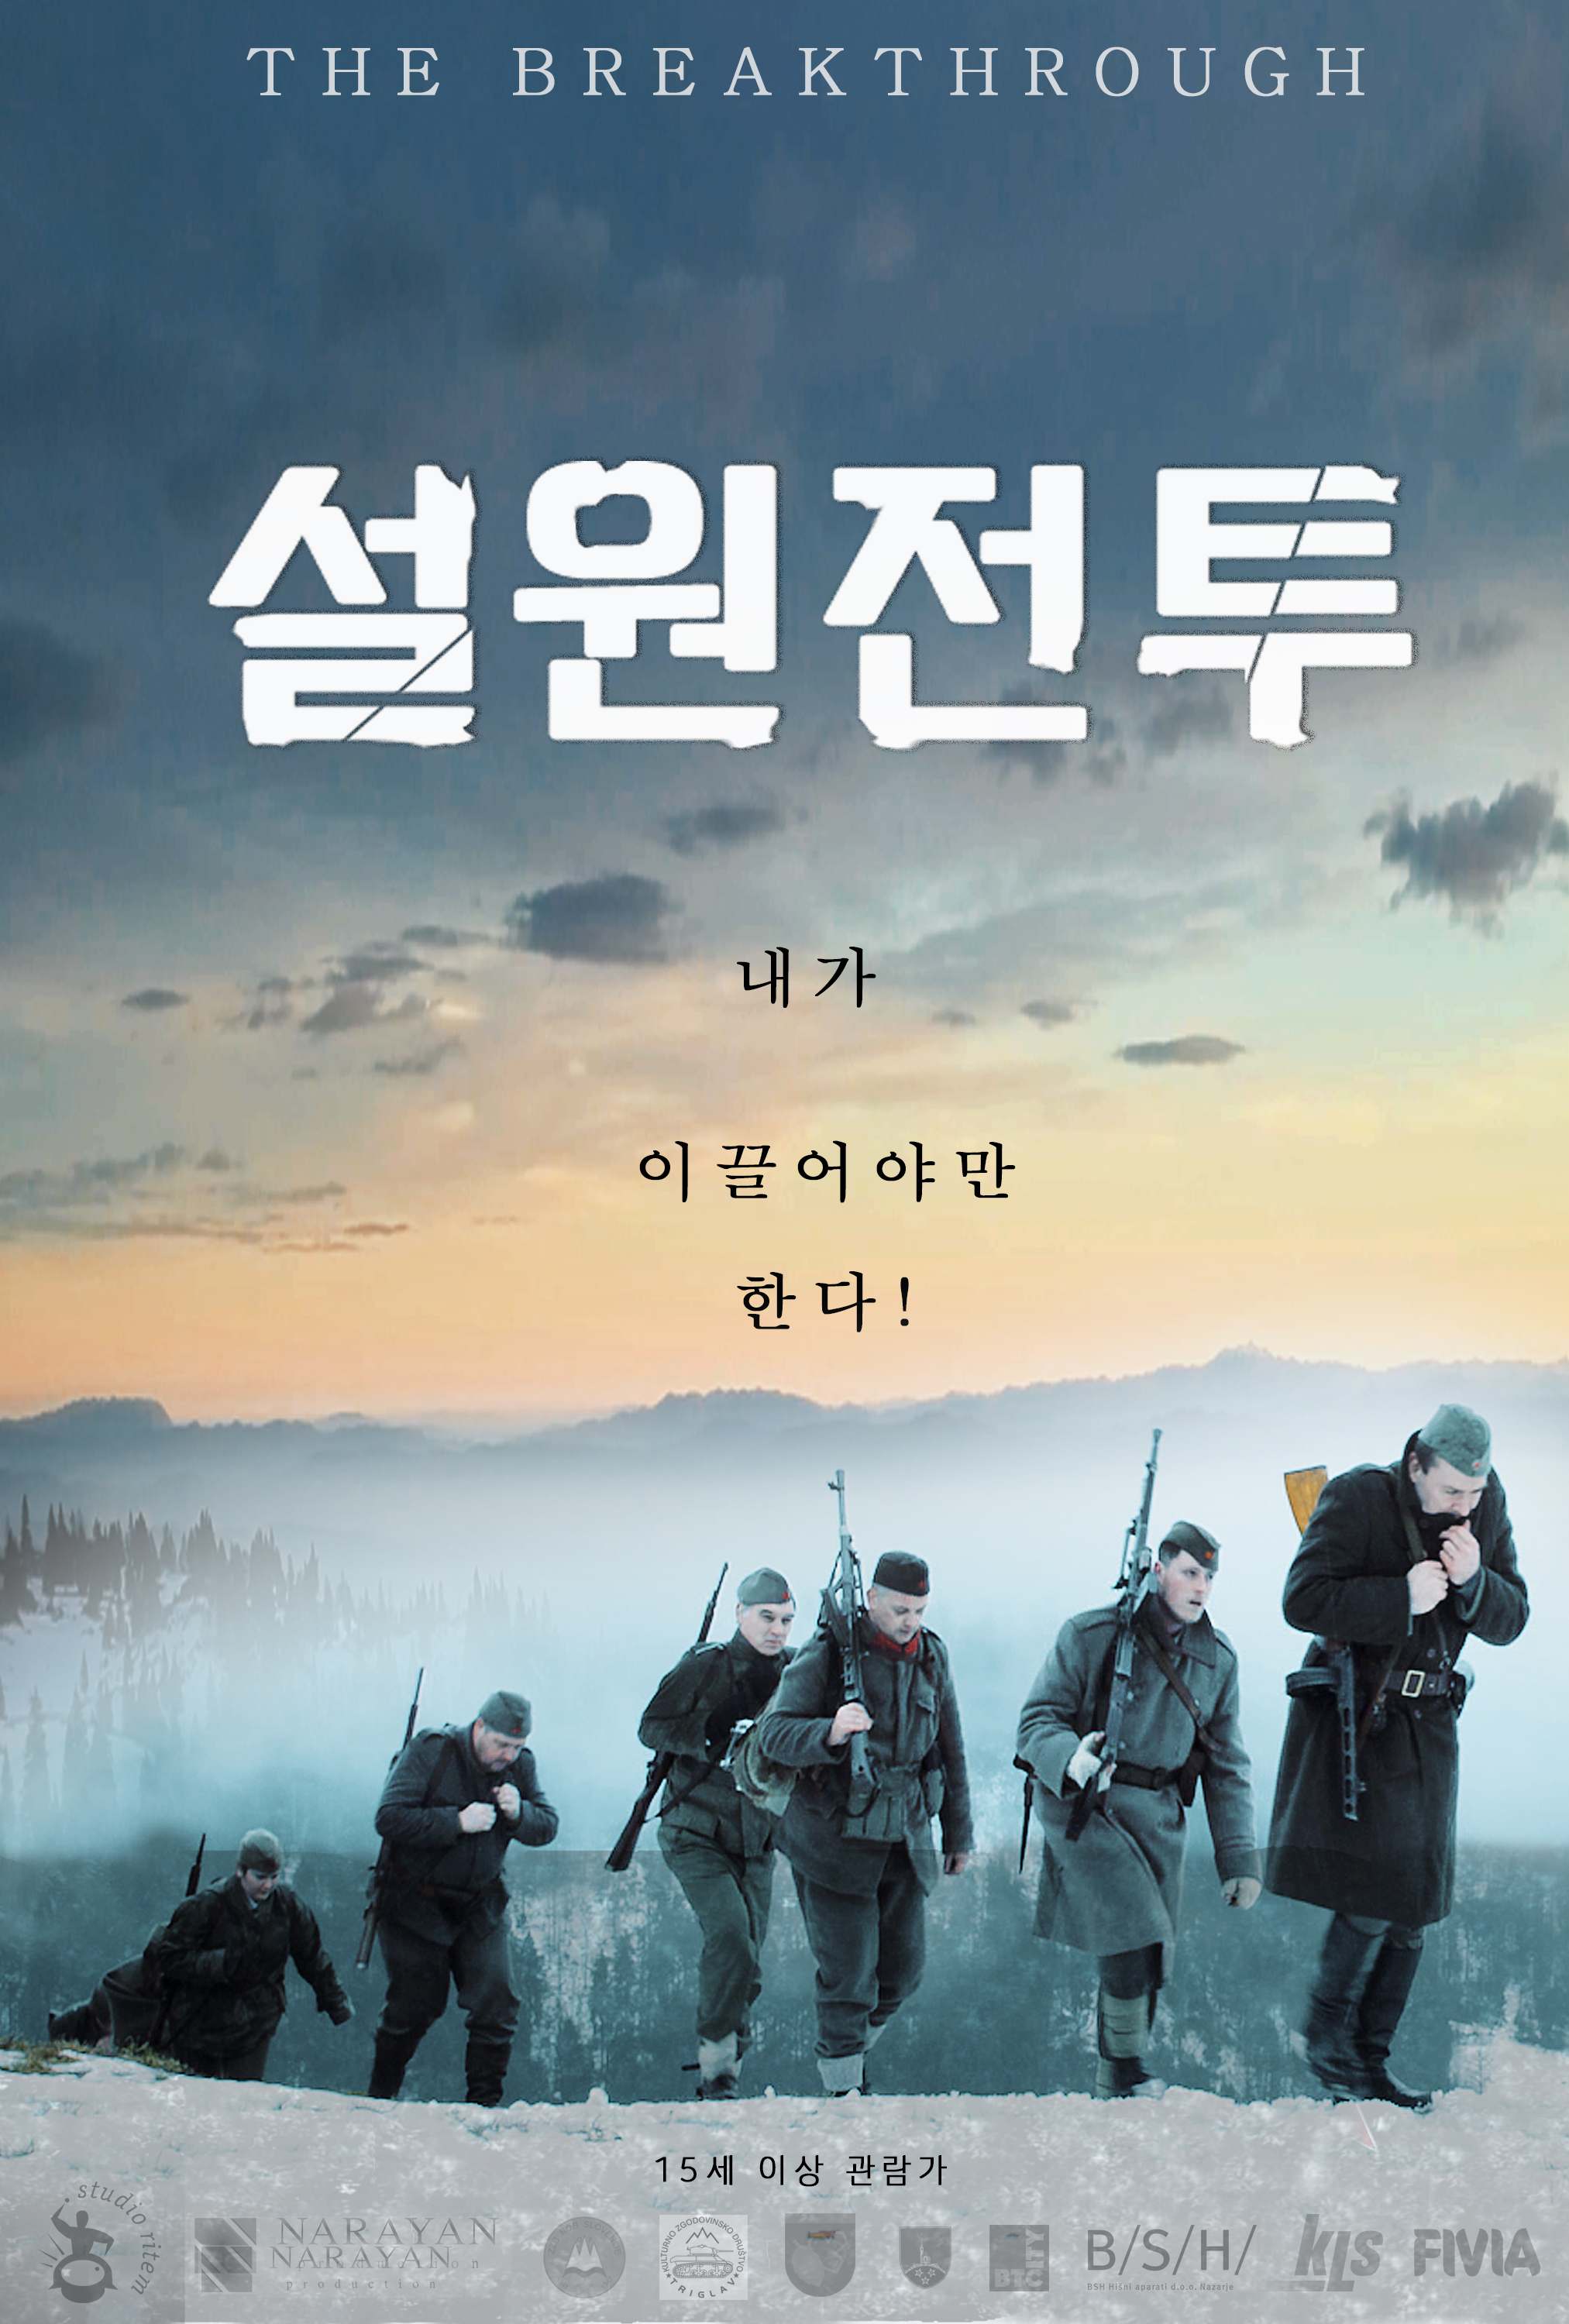 설원전투 (2019) 다시보기 튜브박스365 드라마, 예능, 오락, 시사, 애니, 영화 다시보기